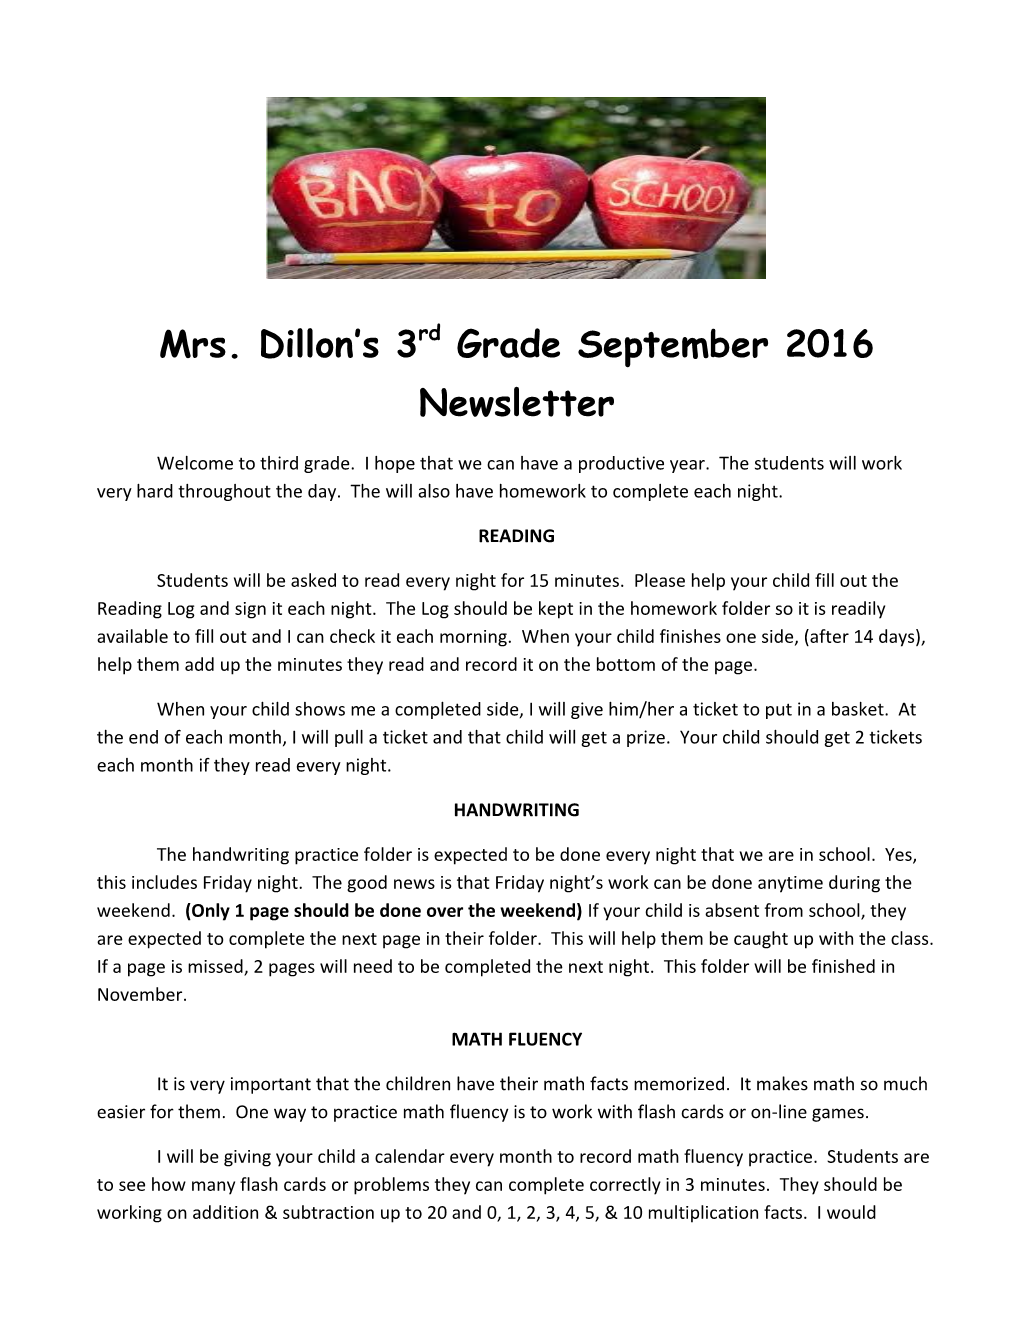 Mrs. Dillon S 3Rd Grade September 2016 Newsletter